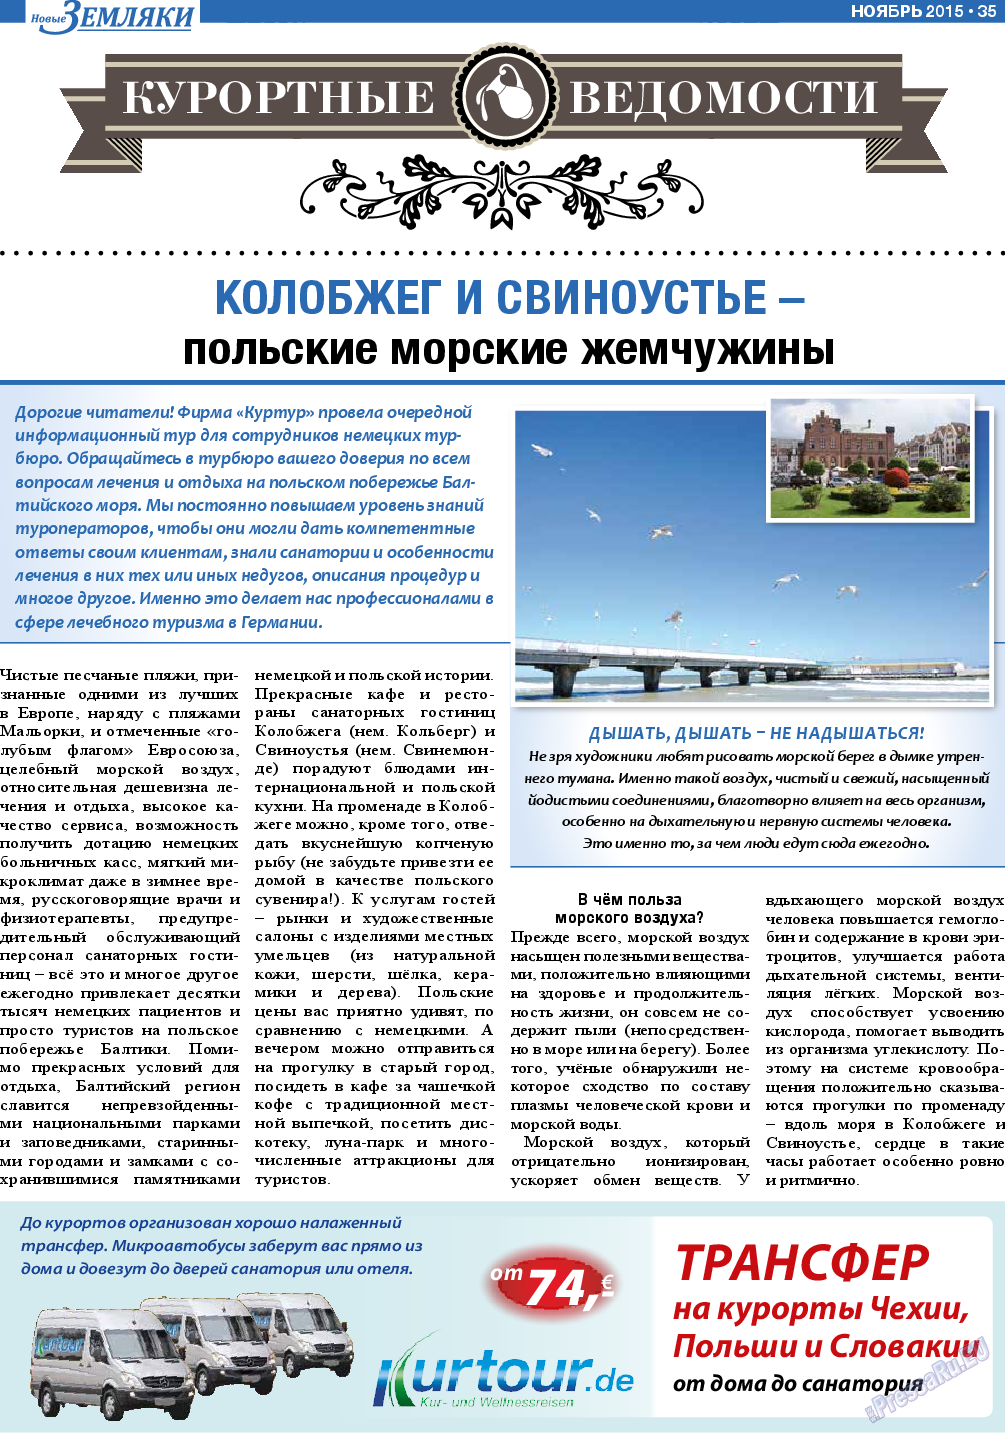 Новые Земляки, газета. 2015 №11 стр.35